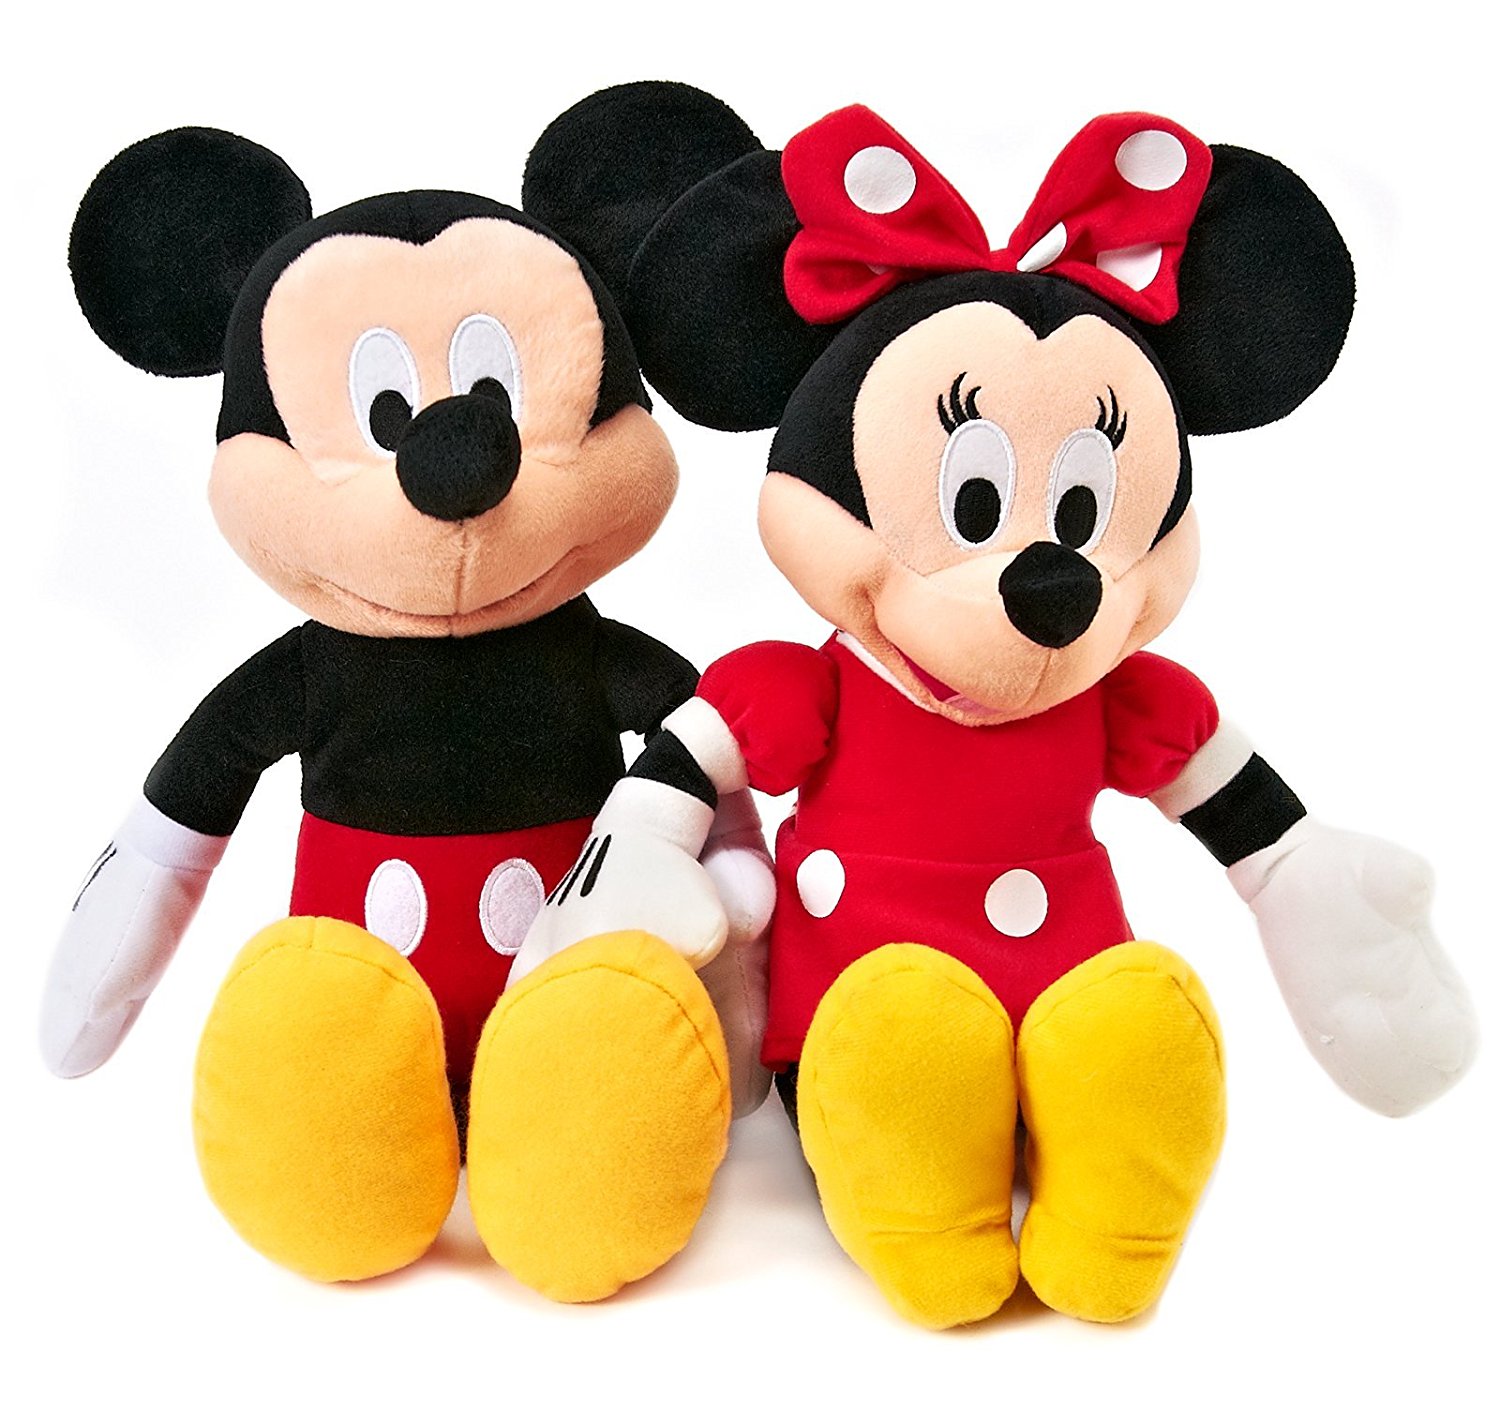 Купить игрушки. Mickey Mouse Clubhouse игрушки. Мягкая игрушка Микки Маус 25 см. Мягкая игрушка, Микки Маус 50 см.. Микки Маус 60см.